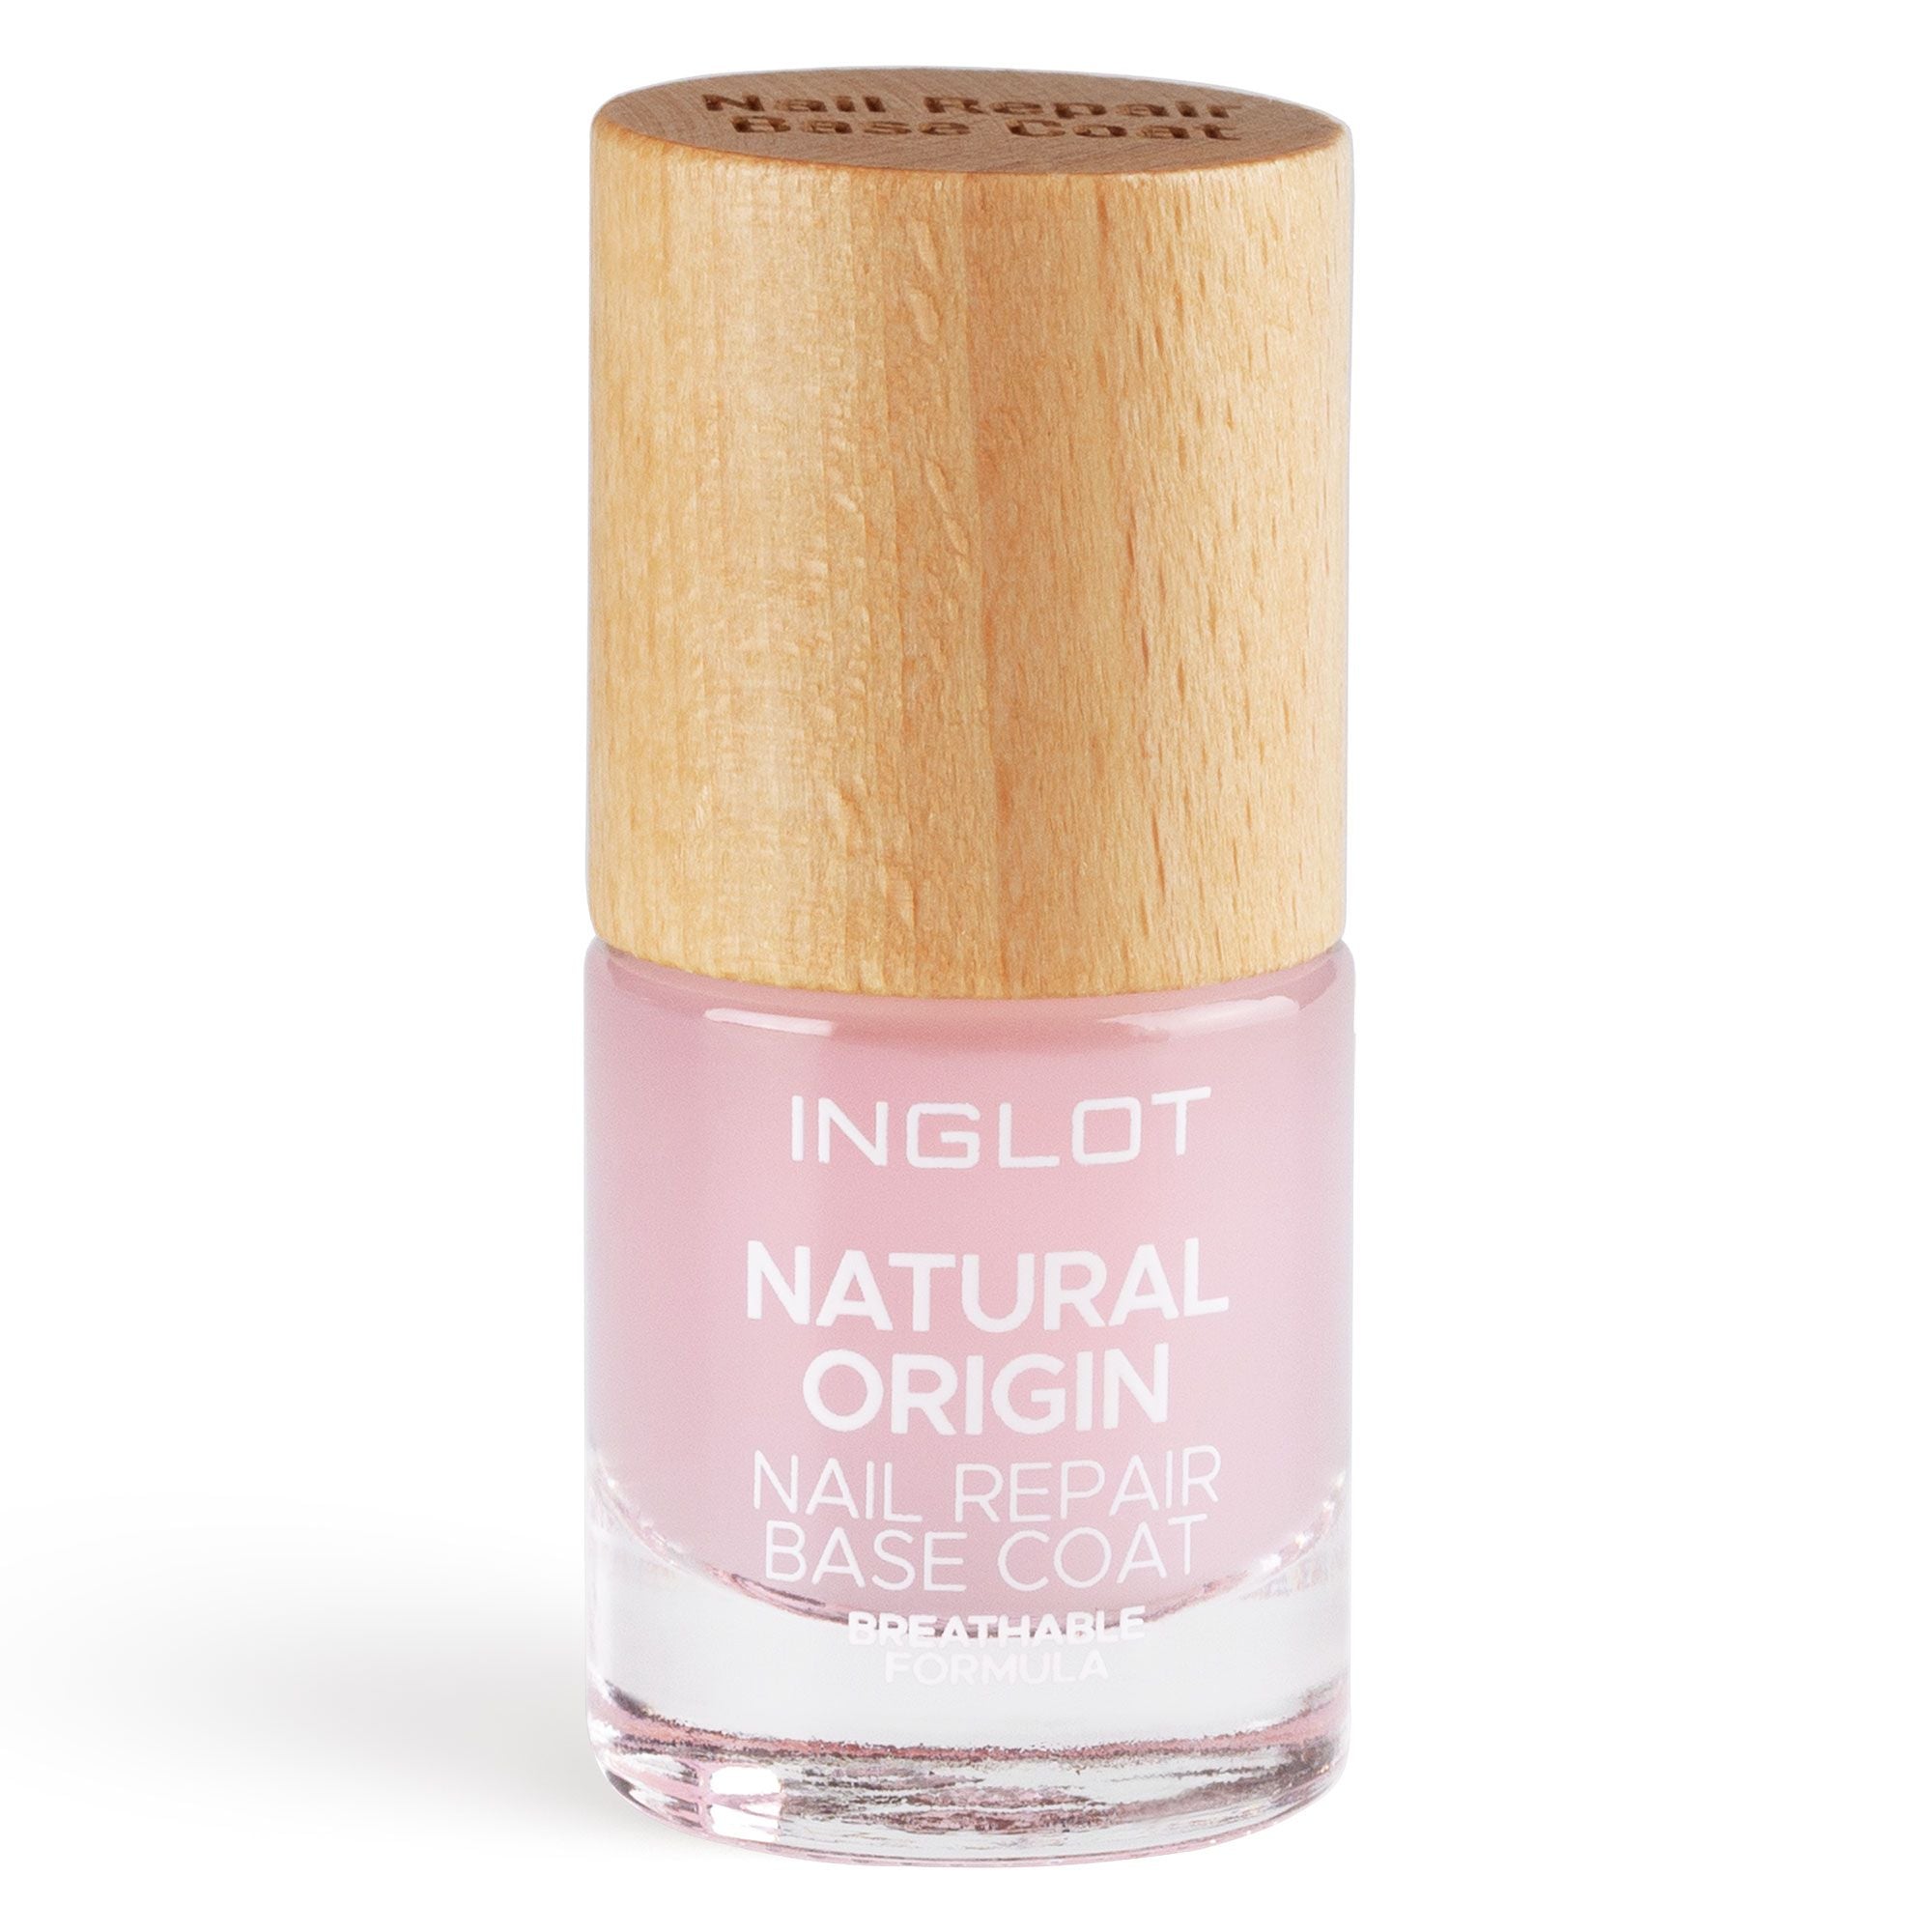 Natural Origin Nail Repair Base Coat - Inglot Cosmetics